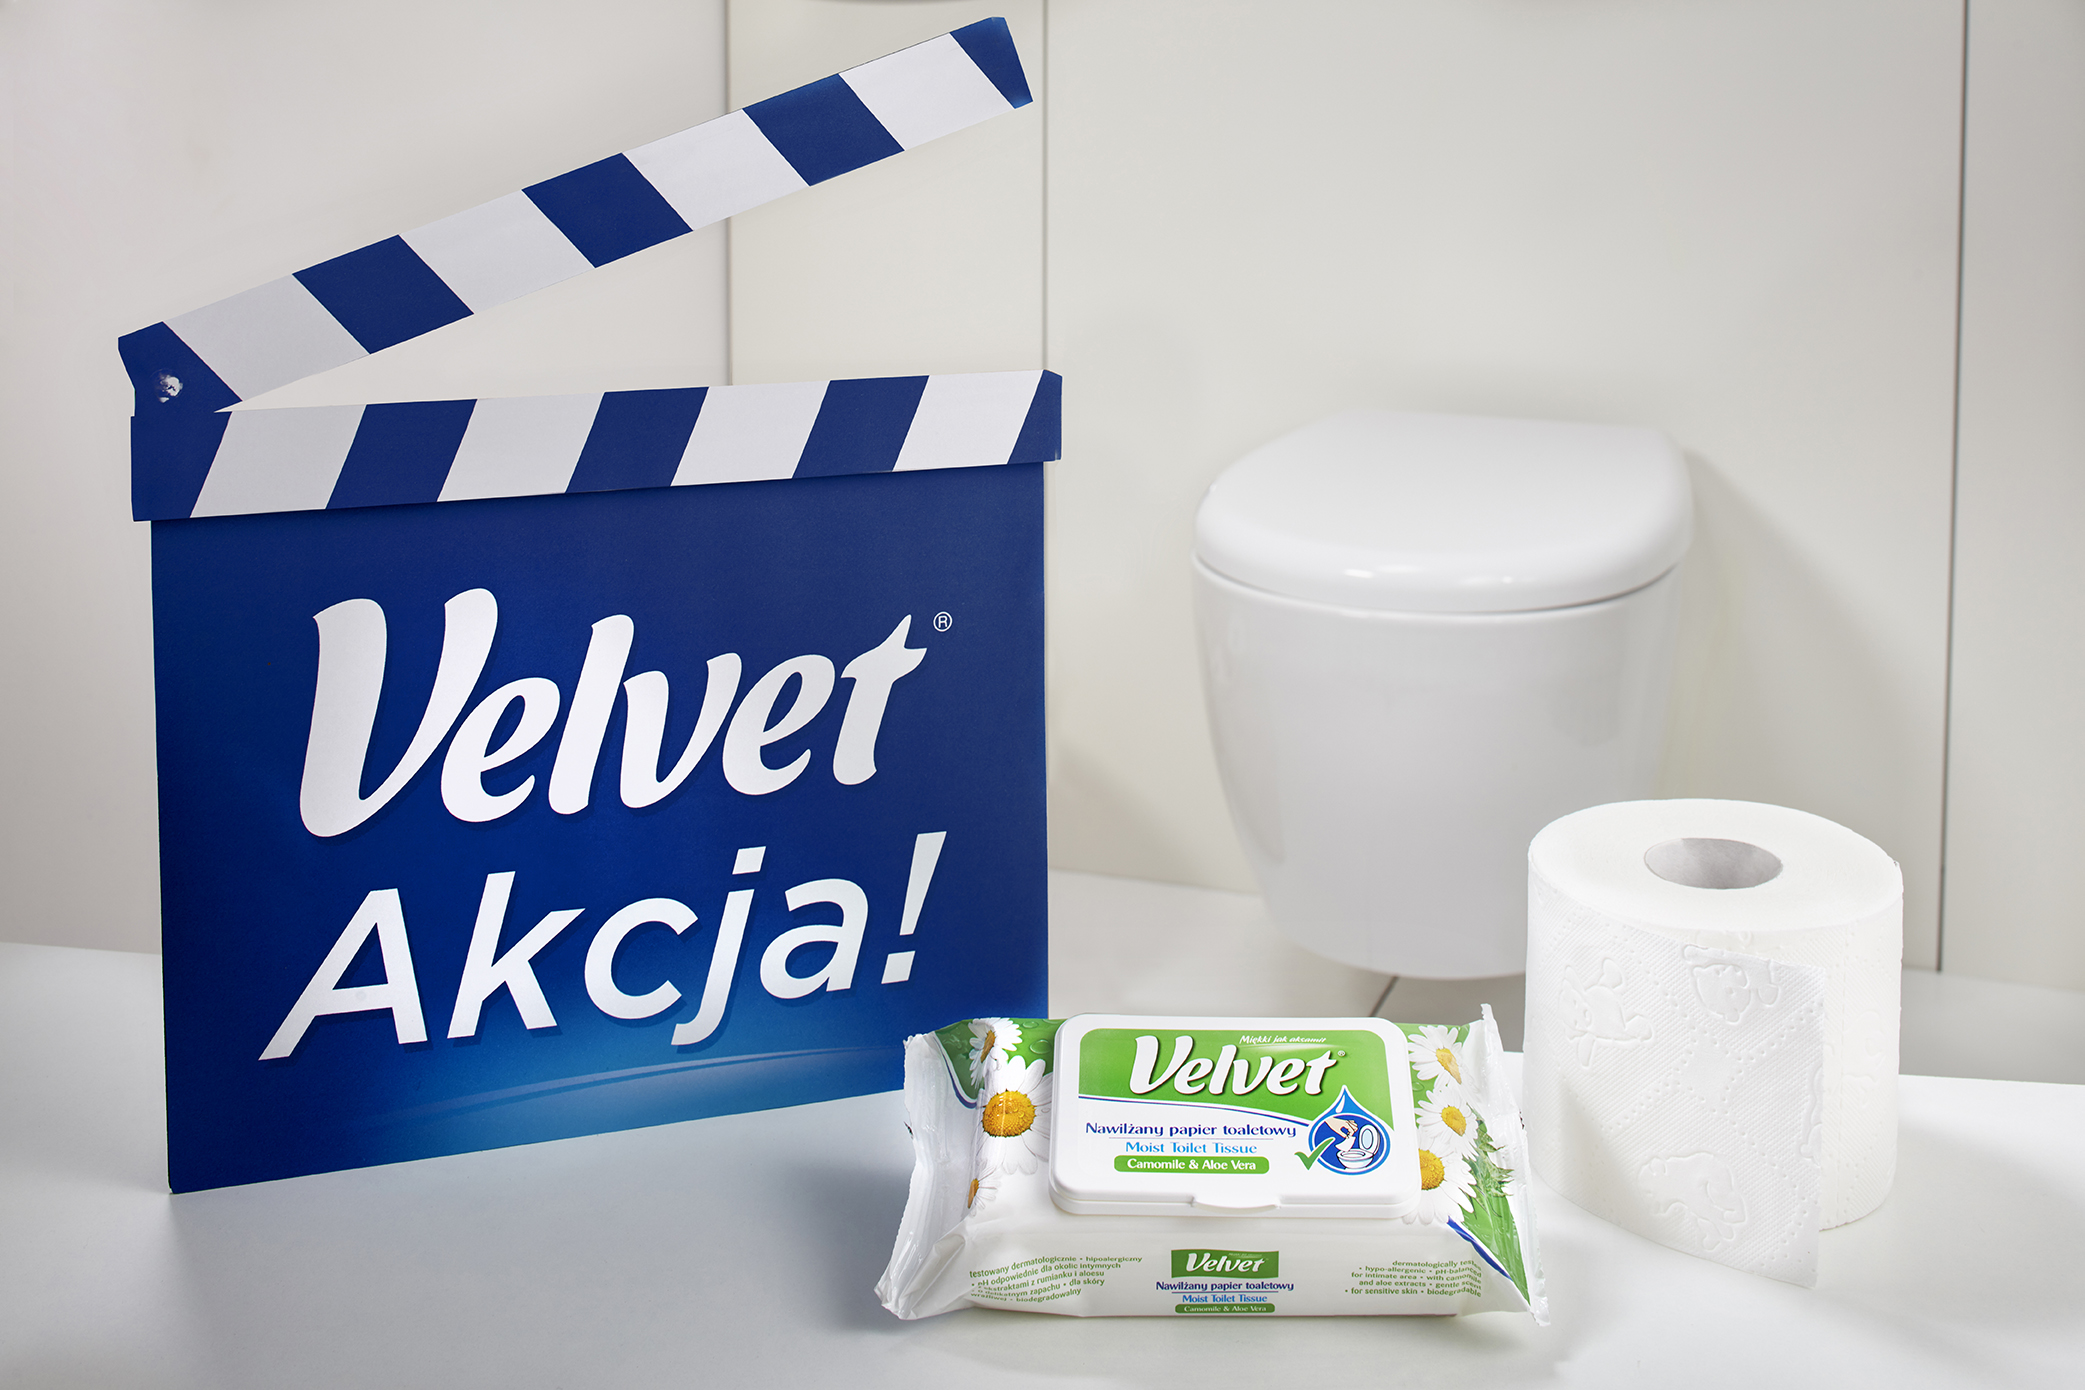 Duet Satysfakcja Velvet – Papier toaletowy i nawilżany papier toaletowy